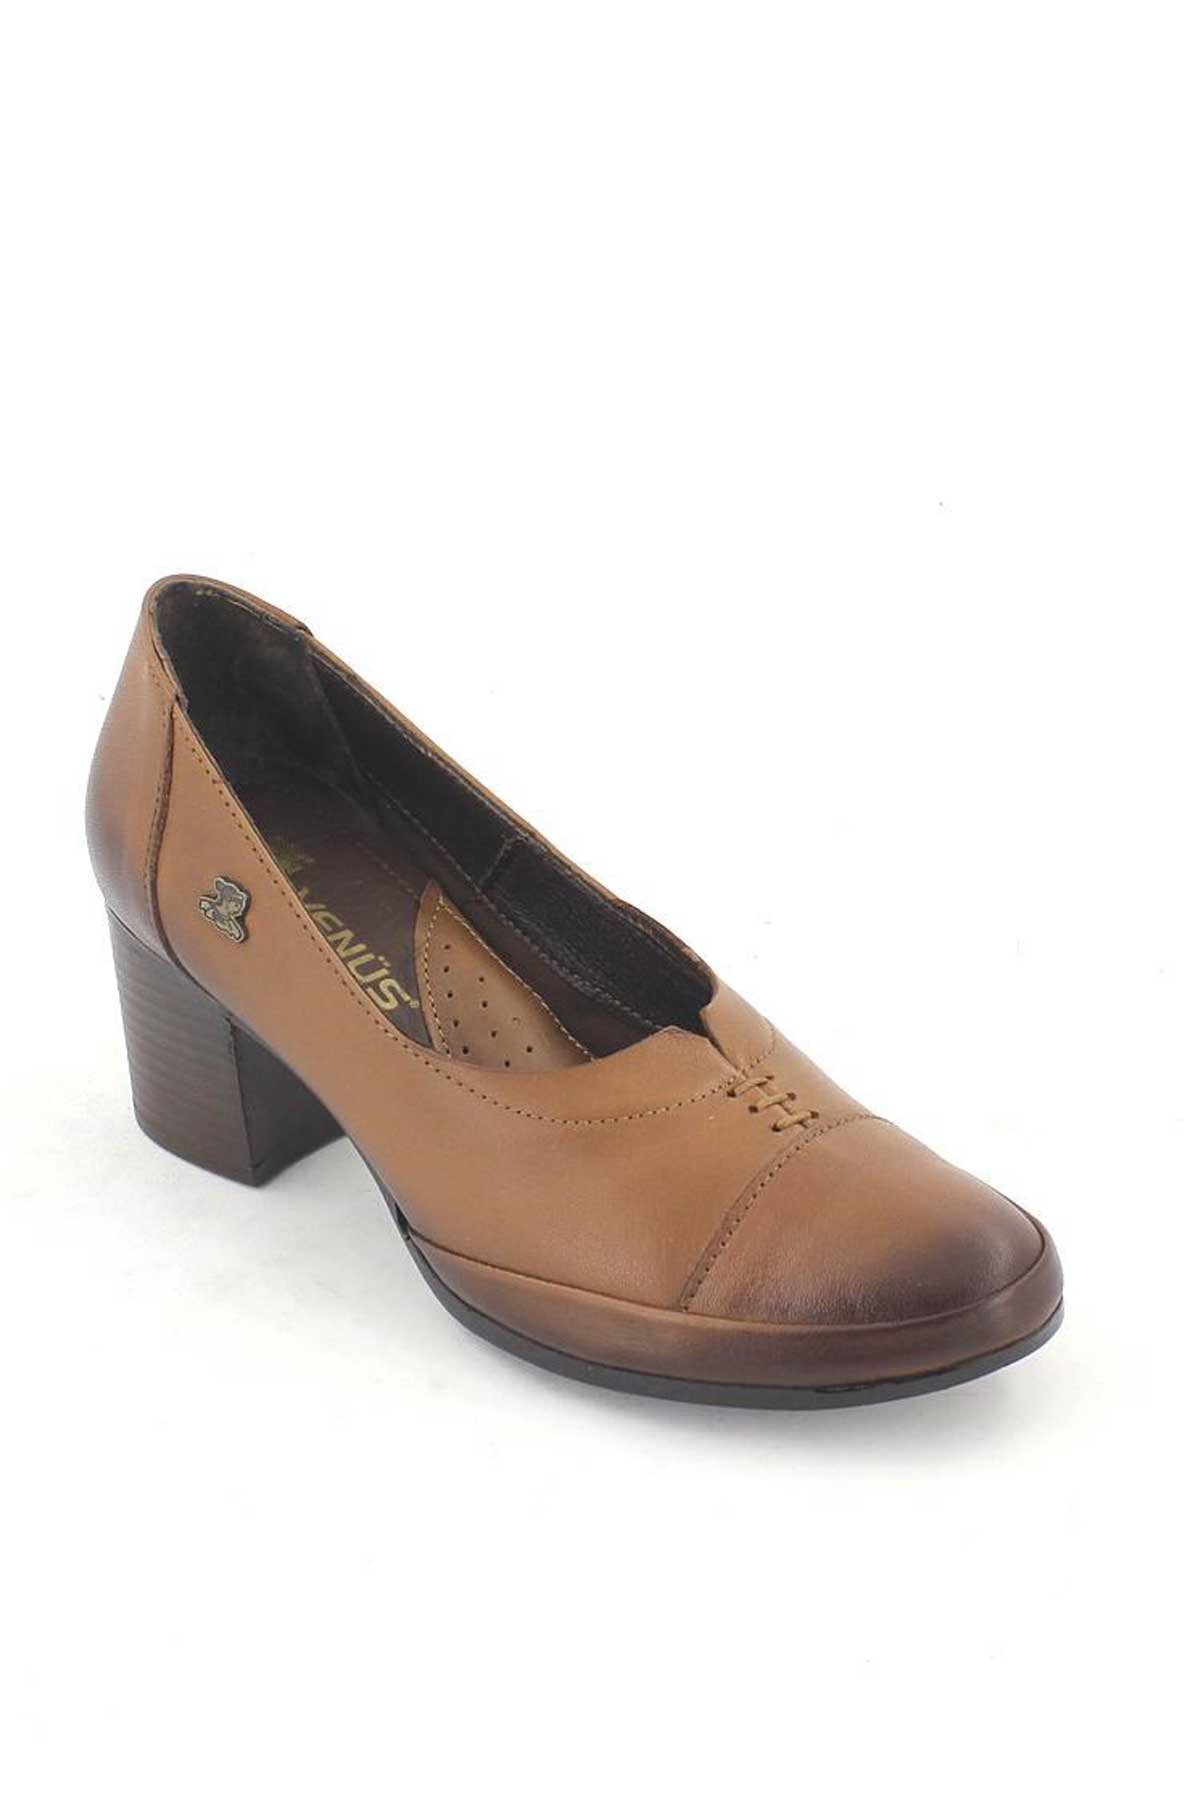 Kadın Topuklu Deri Ayakkabı Taba 1911901K - Thumbnail